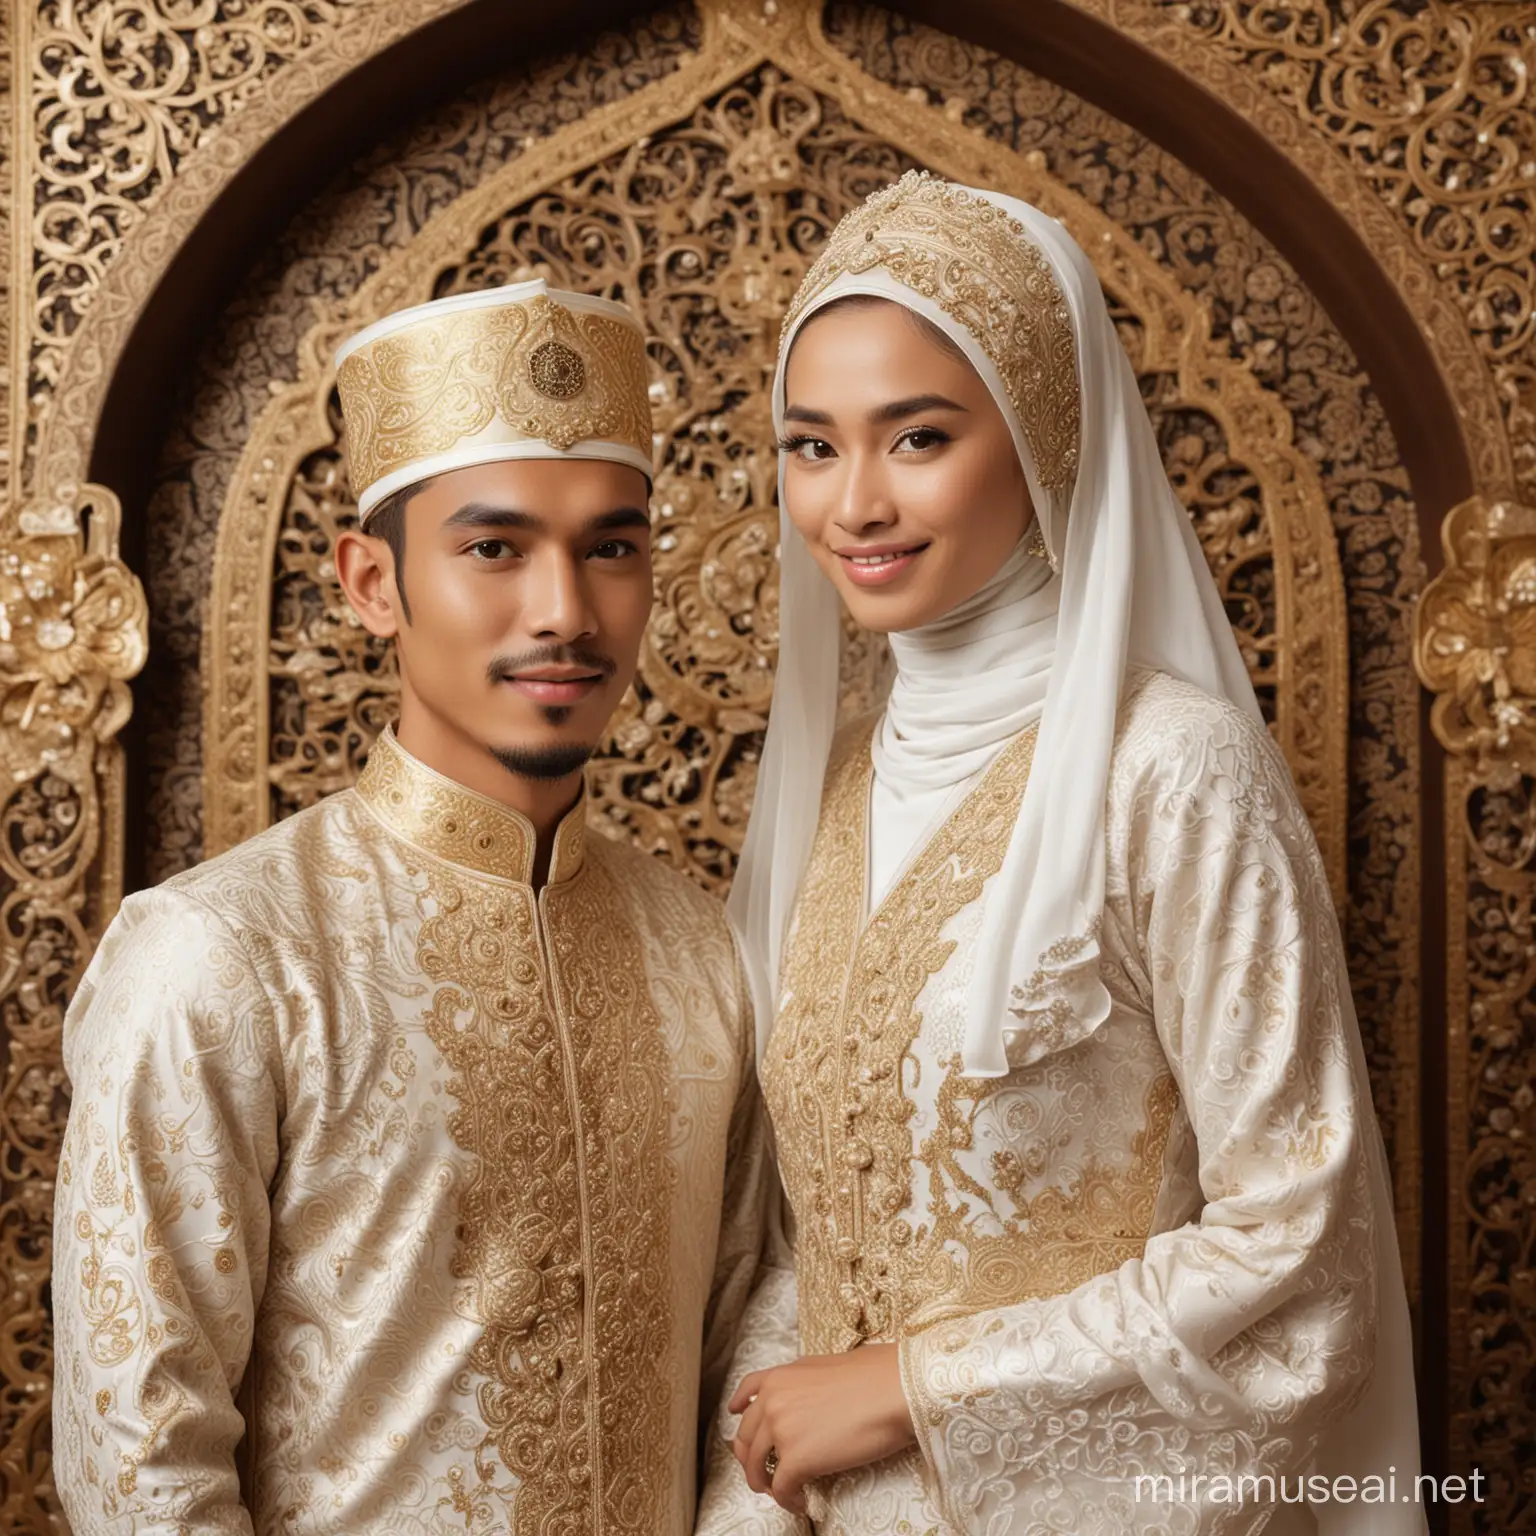 pengantin cowok dan perempuan, wajah bersih glow up ,tidak berjenggot, memakai gaun mewah versi islami, sangat anggun , usia kira kira 25 tahunan wajah asli jawa indonesia, baiground dekorasi mewah, ada papan bertuliskan "SIGIT & NINGSIH"